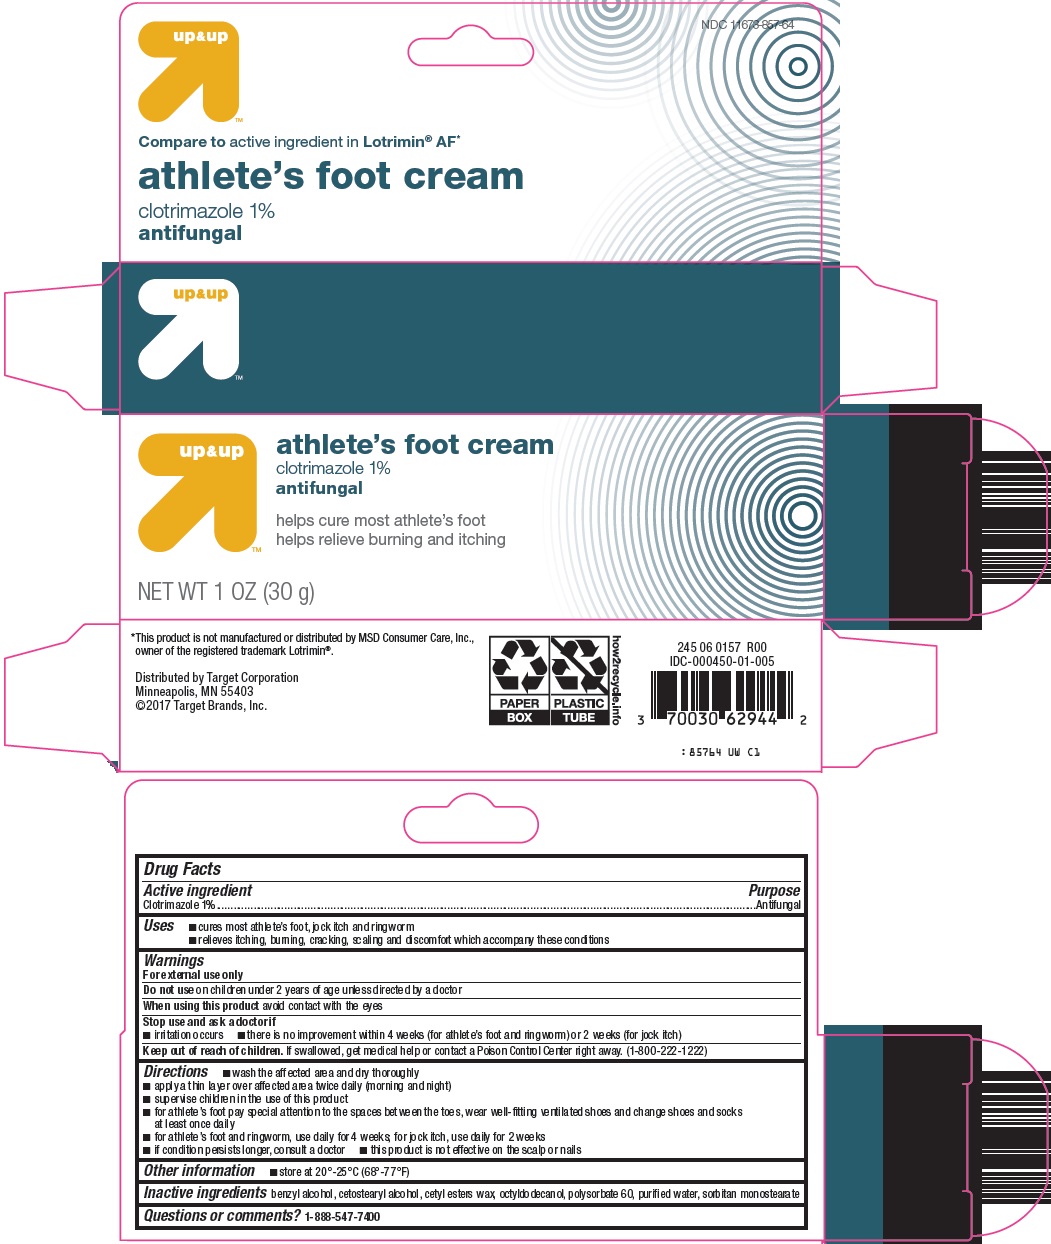 athlete's foot cream image